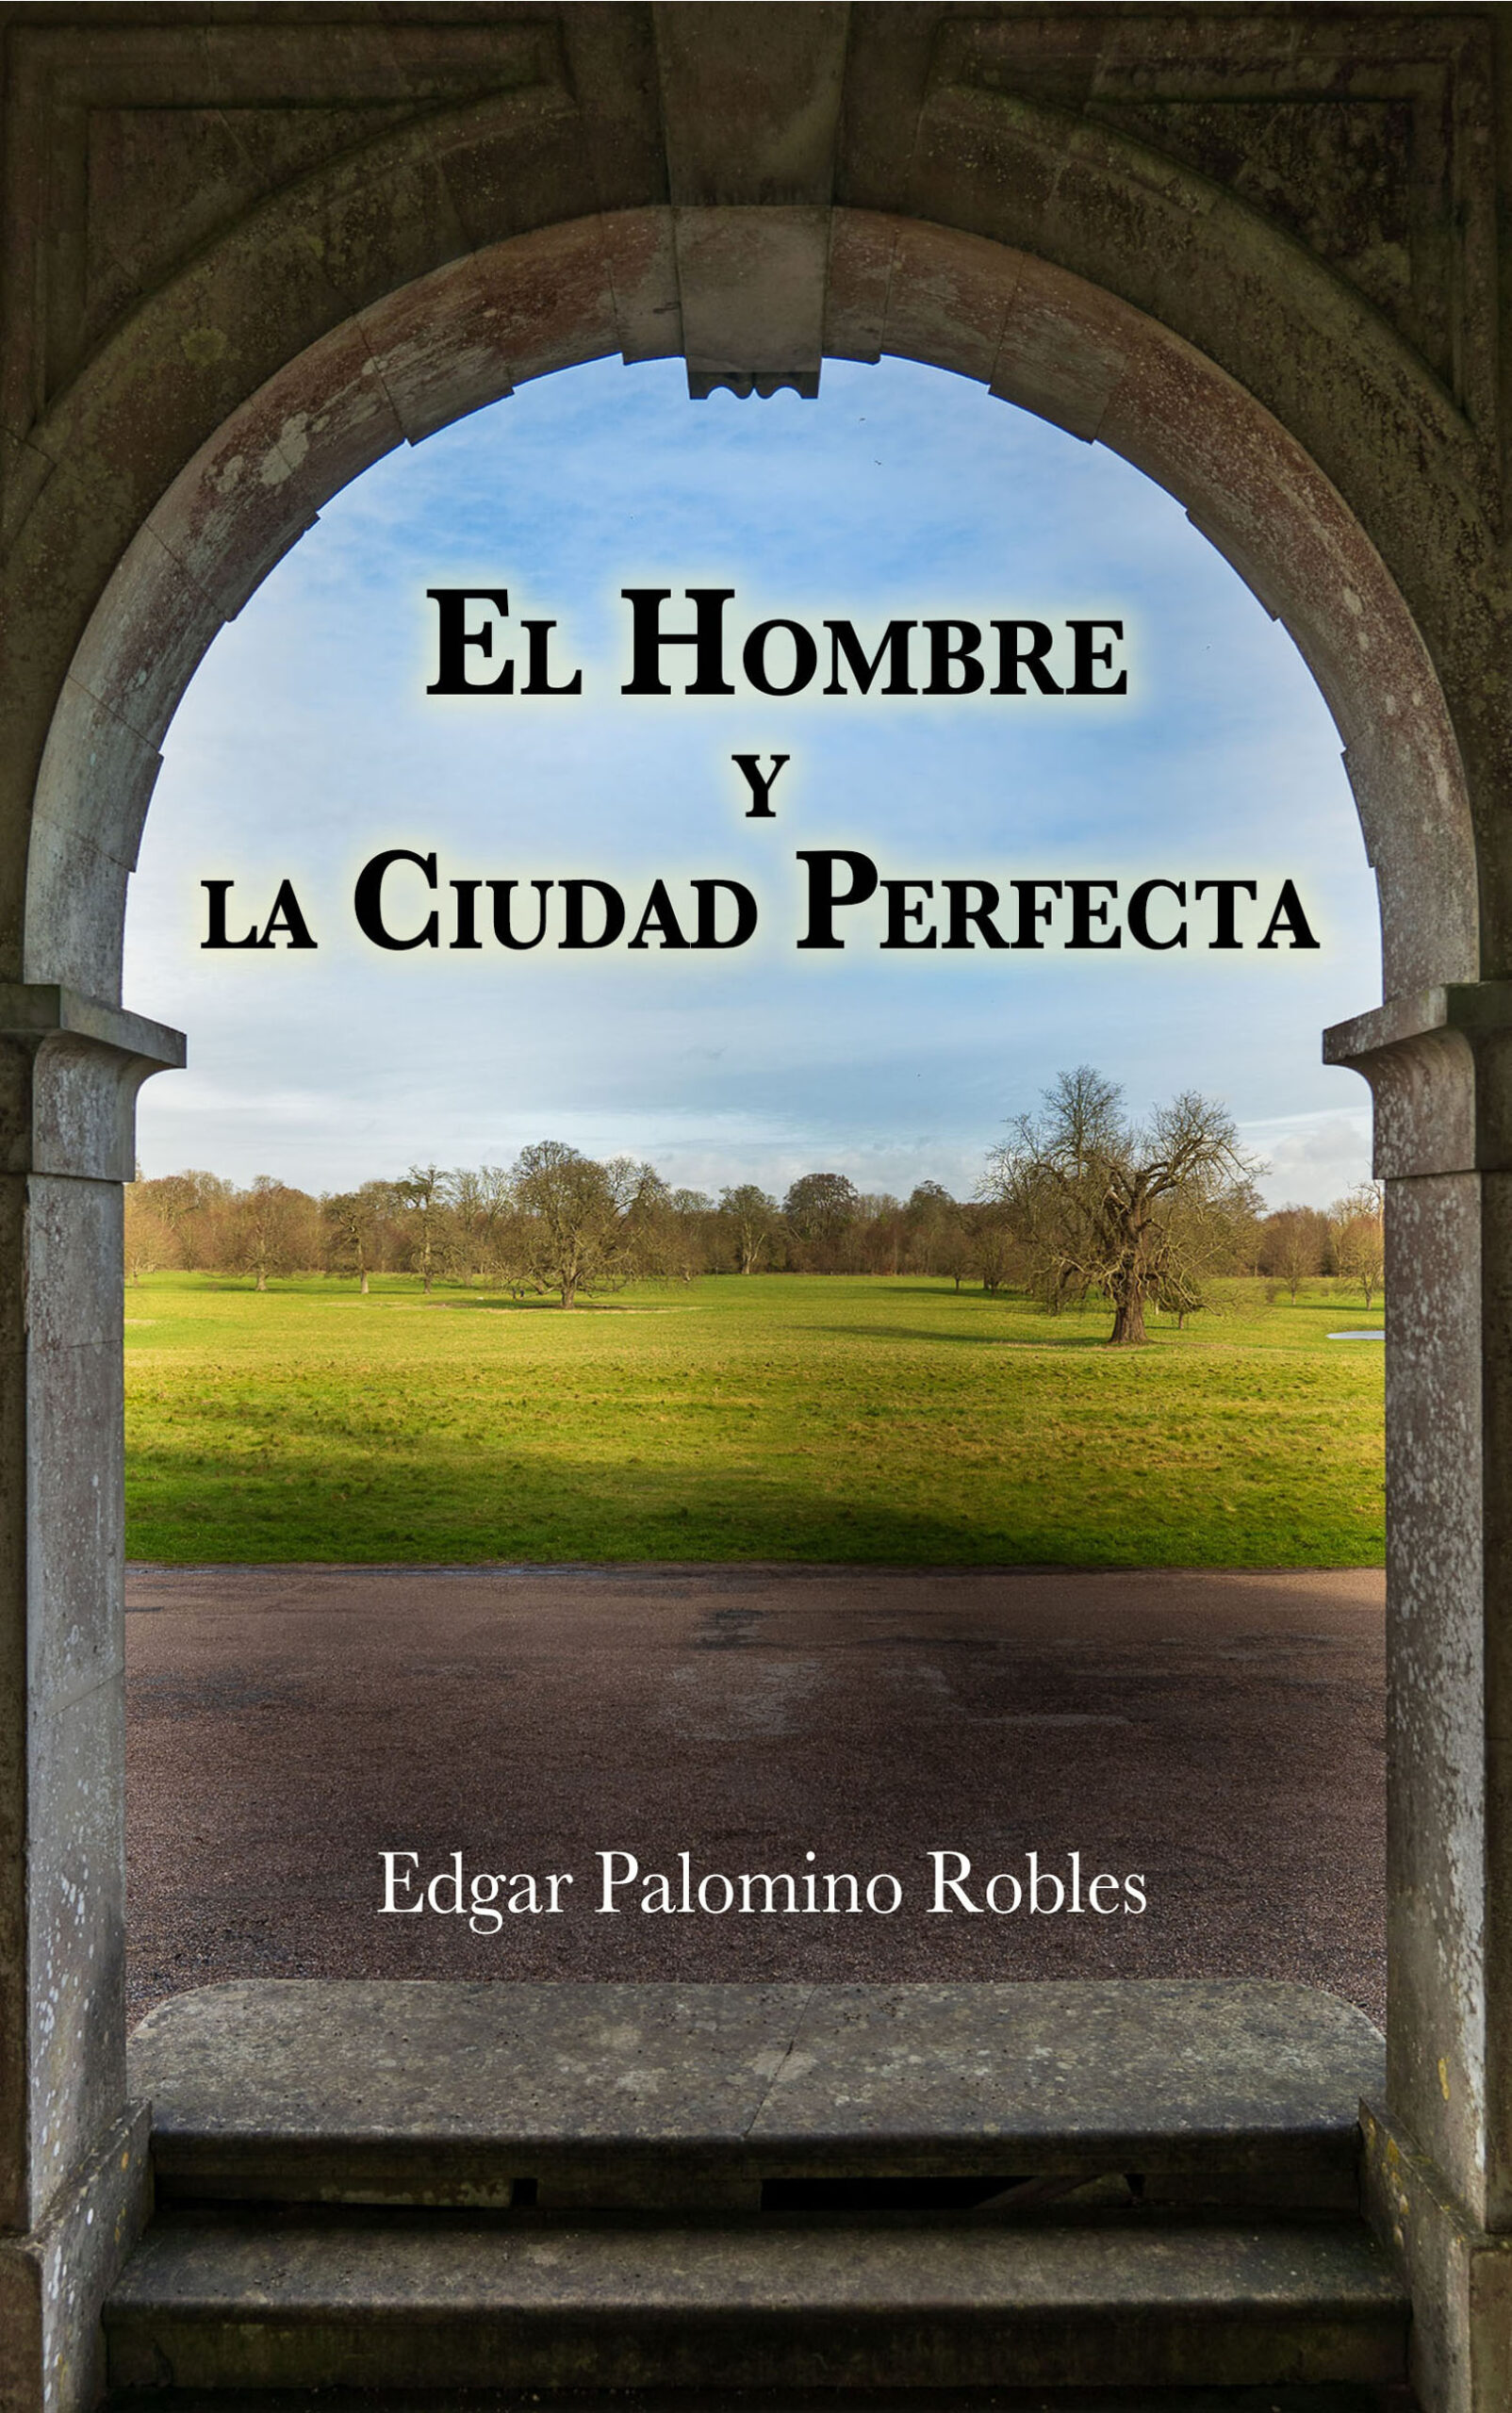 El Hombre y la Ciudad Perfecta, de Edgar Palomino Robles